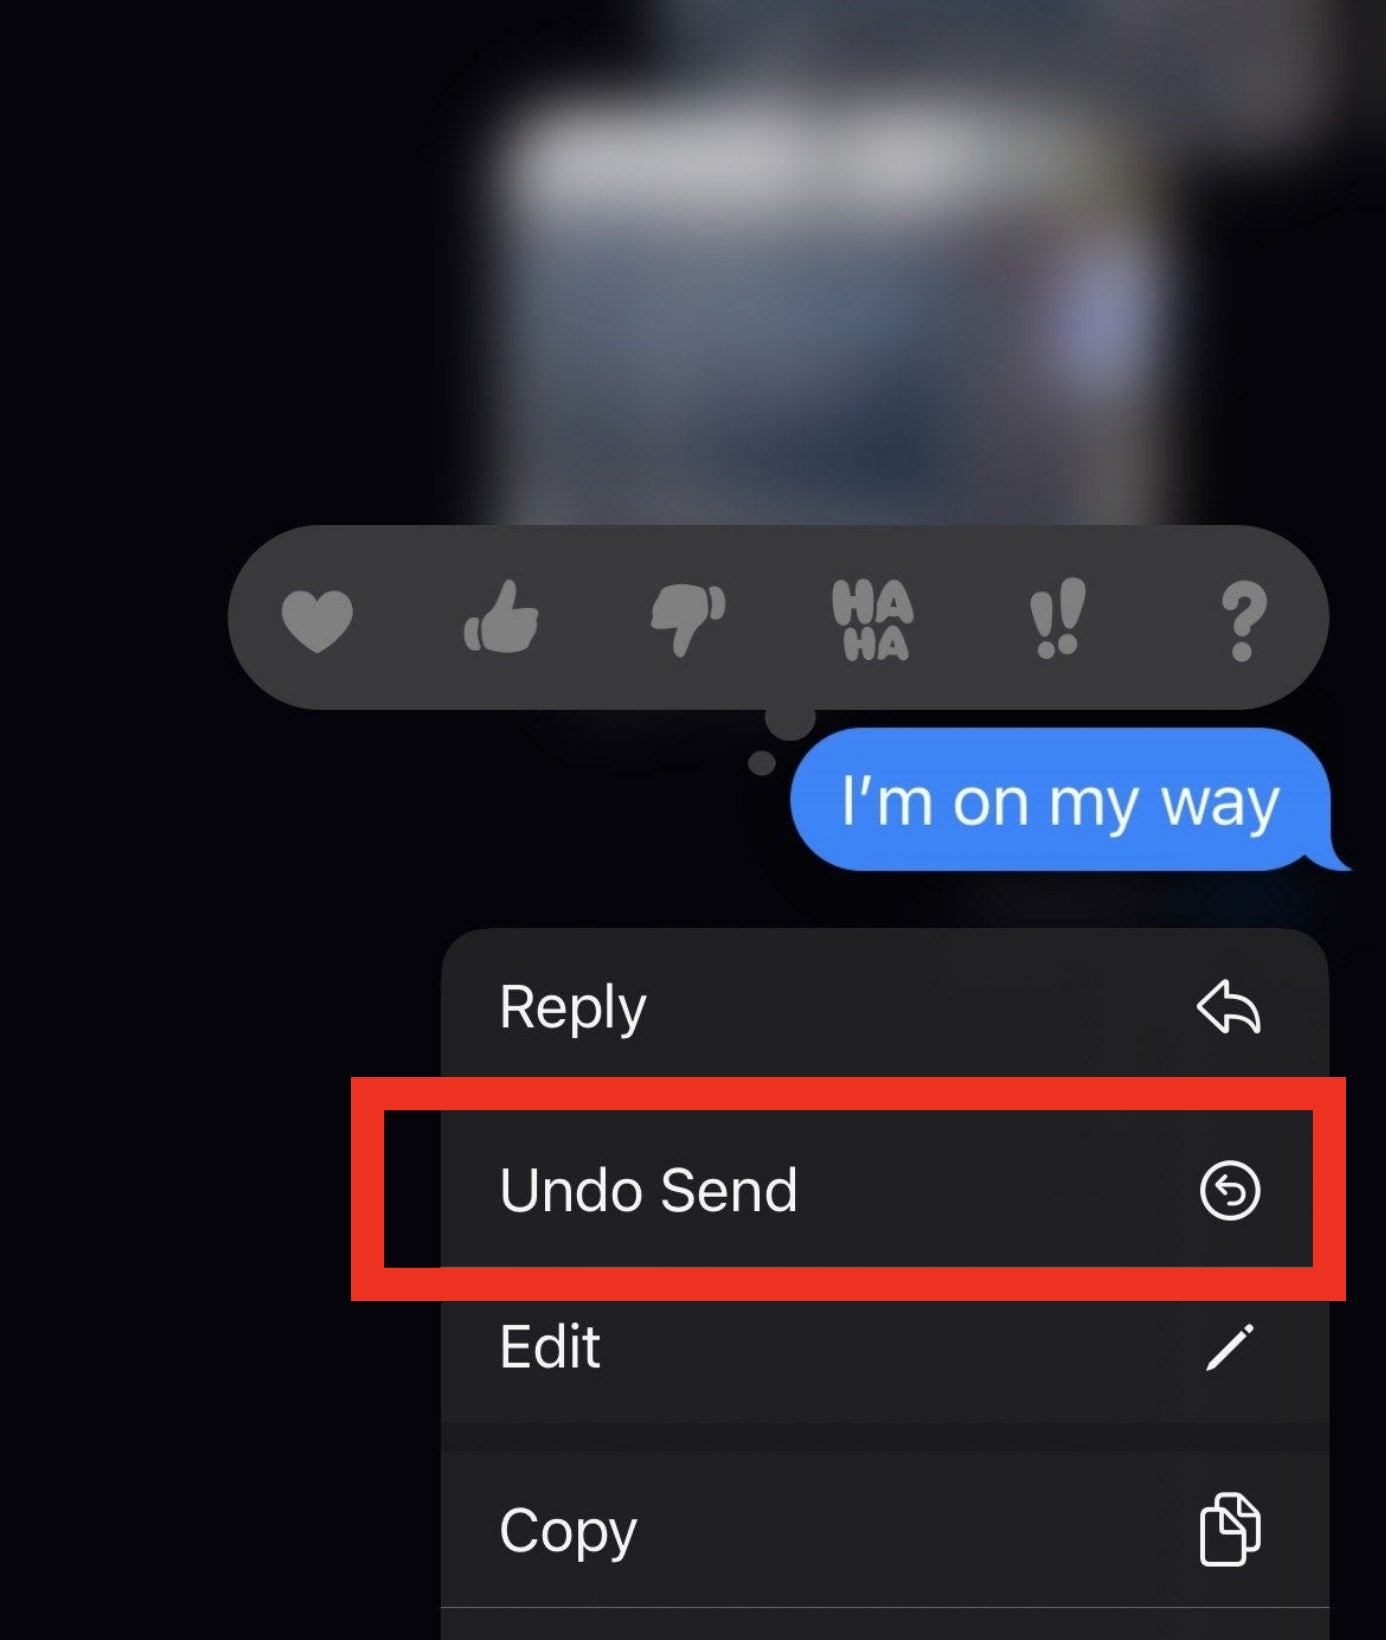 undo send option